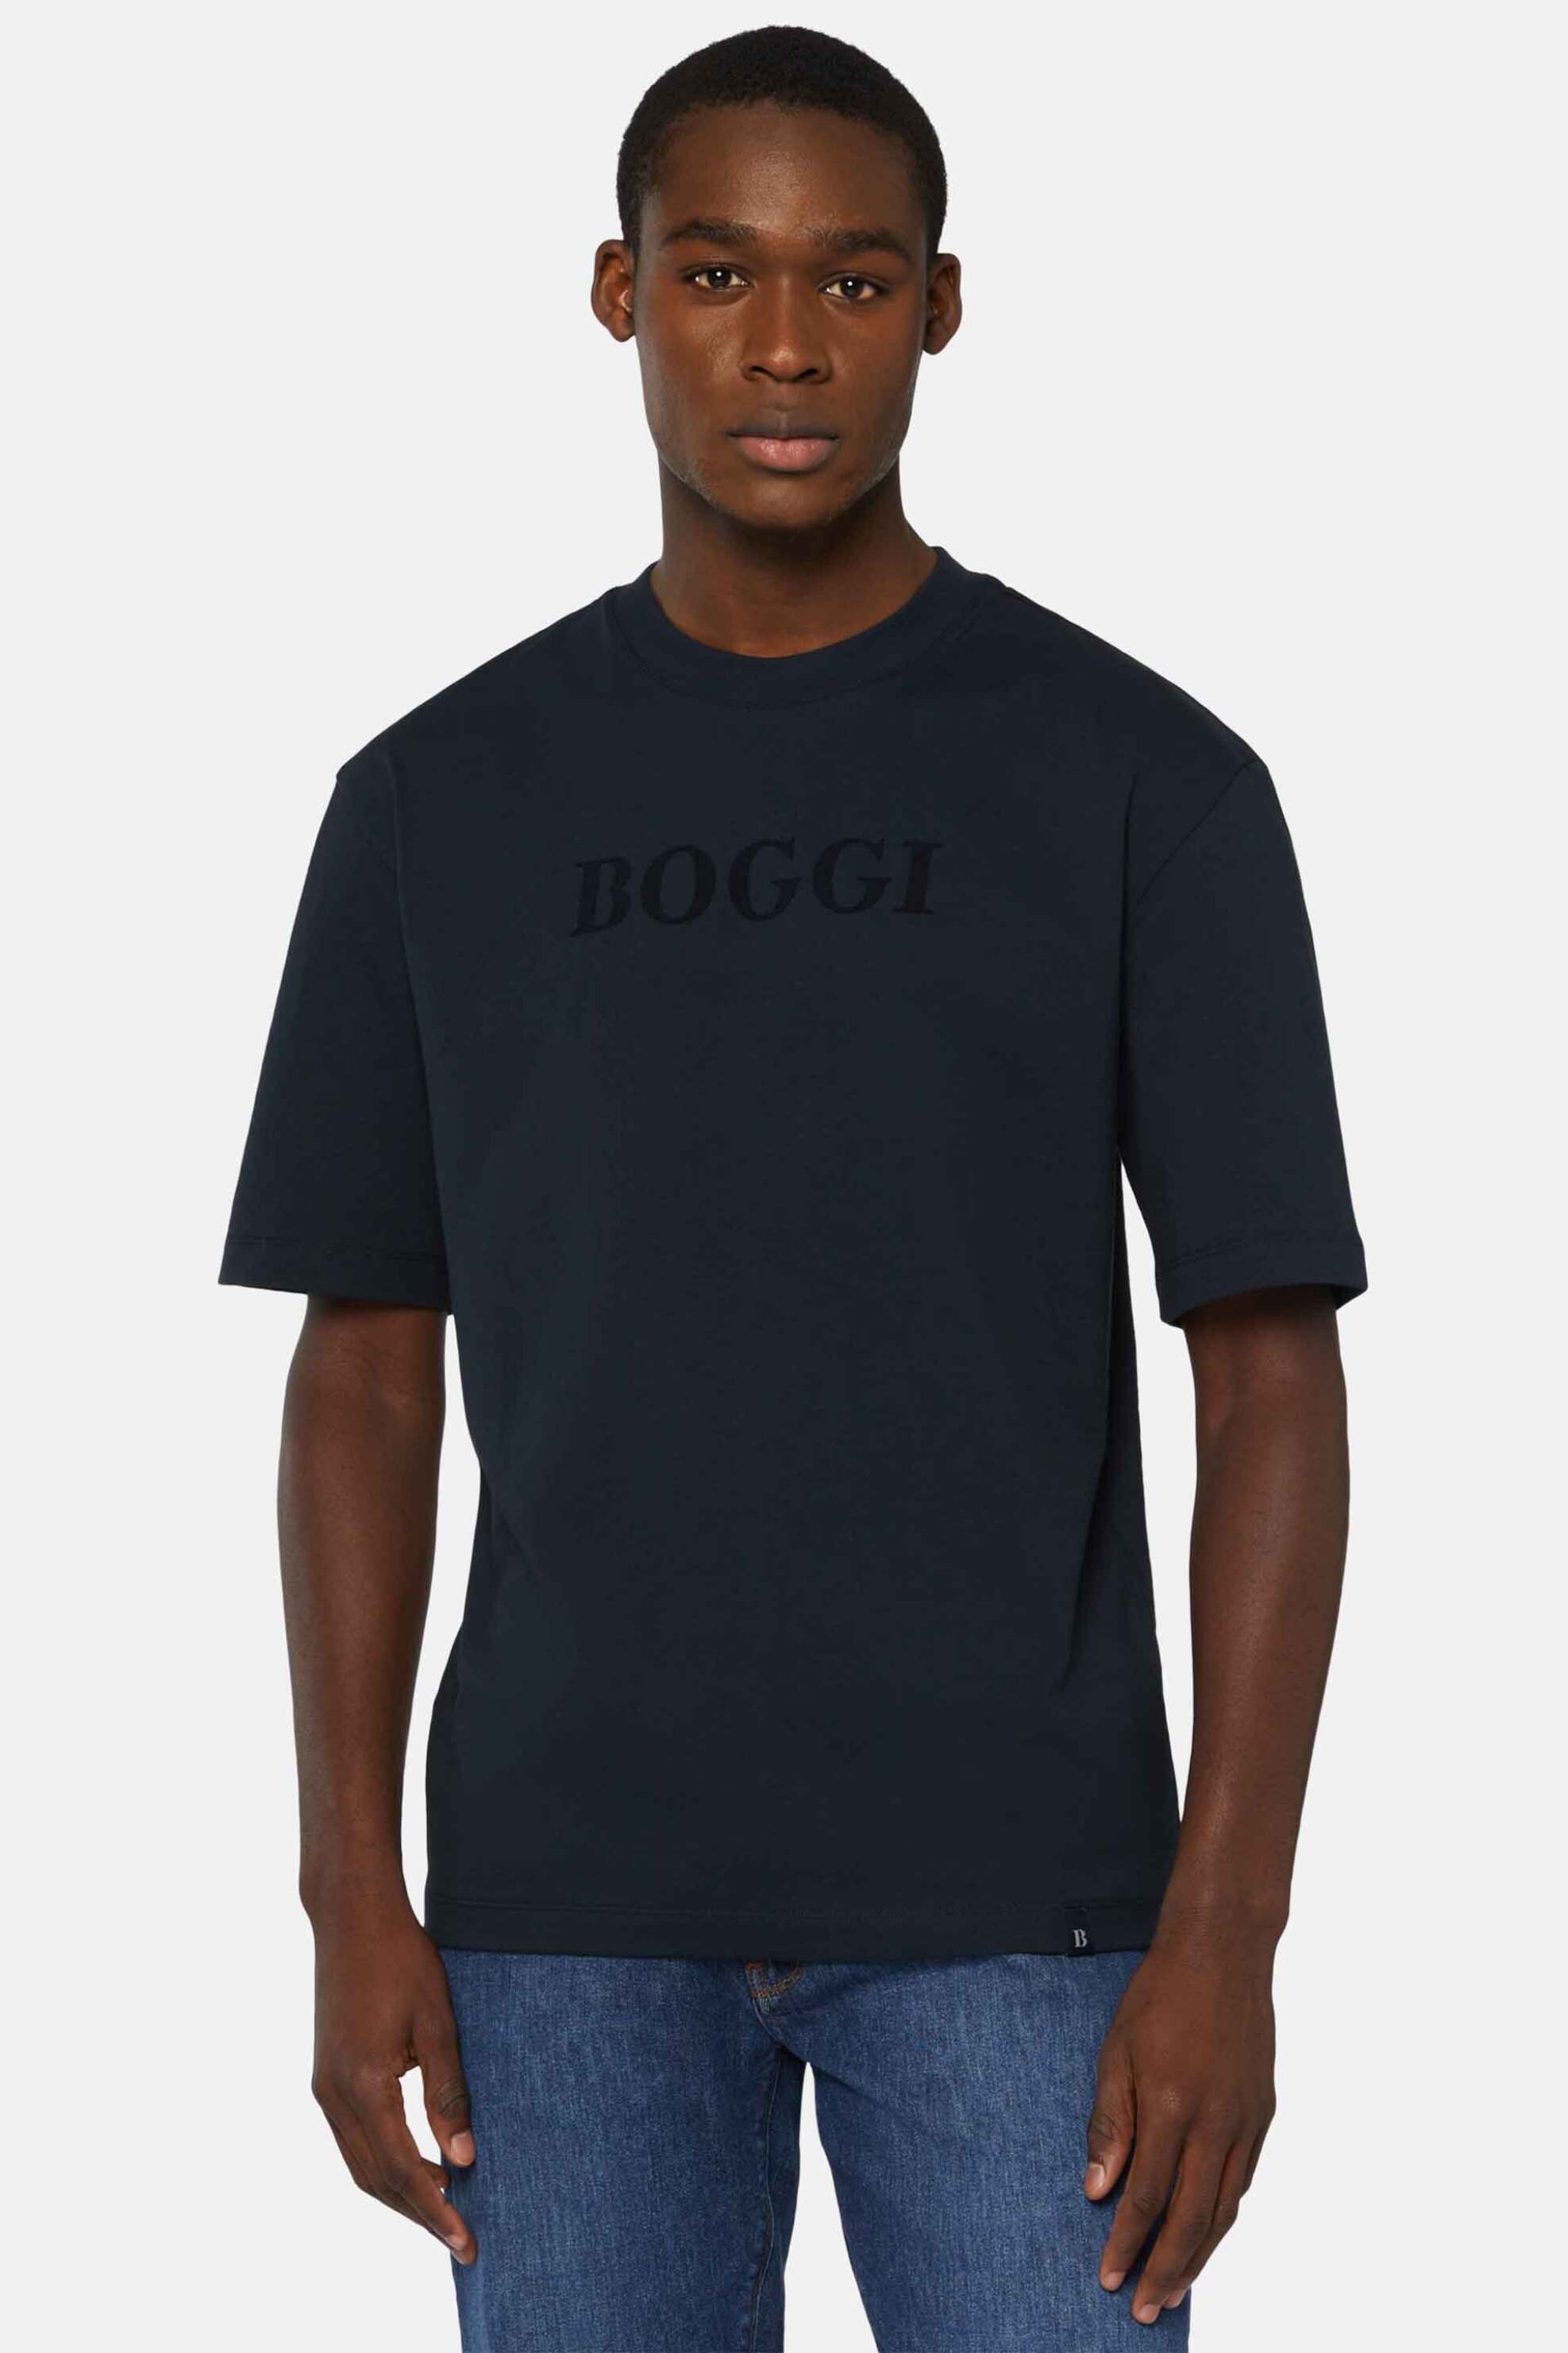 Ανδρική Μόδα > Ανδρικά Ρούχα > Ανδρικές Μπλούζες > Ανδρικά T-Shirts Boggi Milano ανδρικό T-shirt με λογότυπο Relaxed Fit - BO24P053501 Μπλε Σκούρο